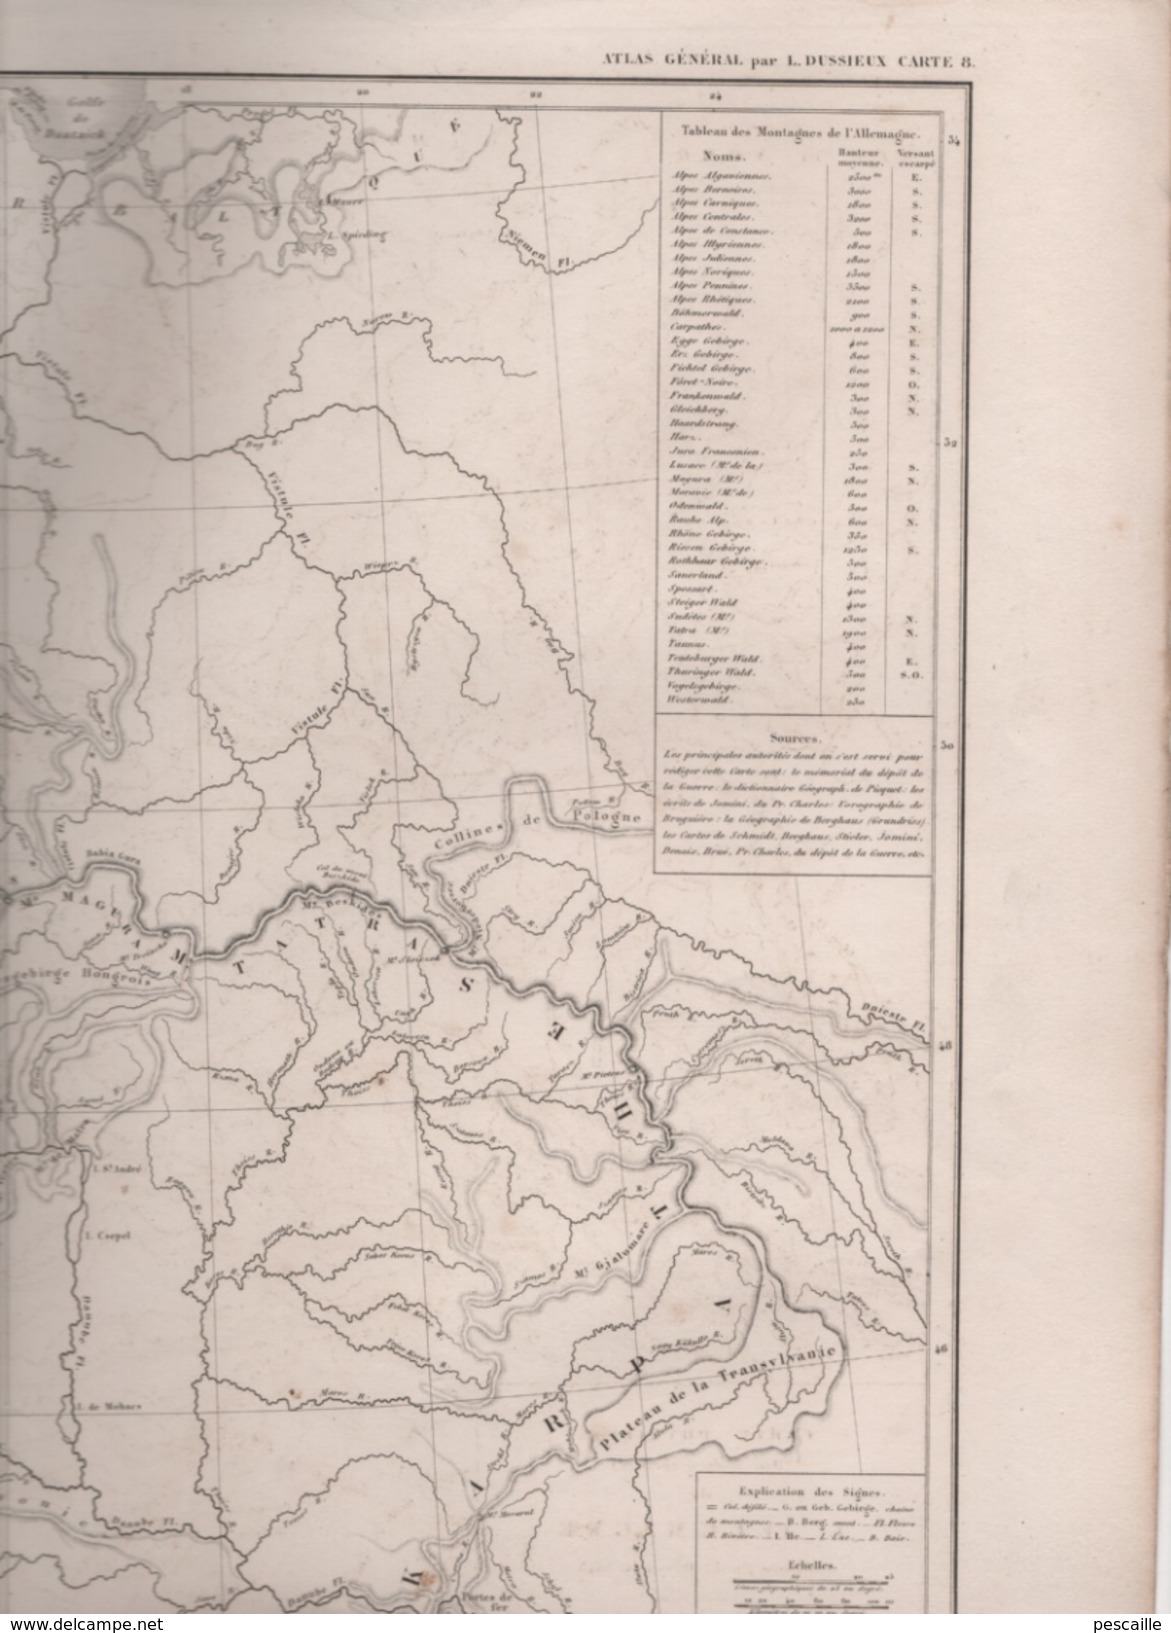 CARTE PHYSIQUE ( ORO-HYDROGRAPHIQUE ) DE L' ALLEMAGNE DRESSEE PAR L DUSSIEUX EN 1845 - TABLEAU DES MONTAGNES - Mapas Geográficas